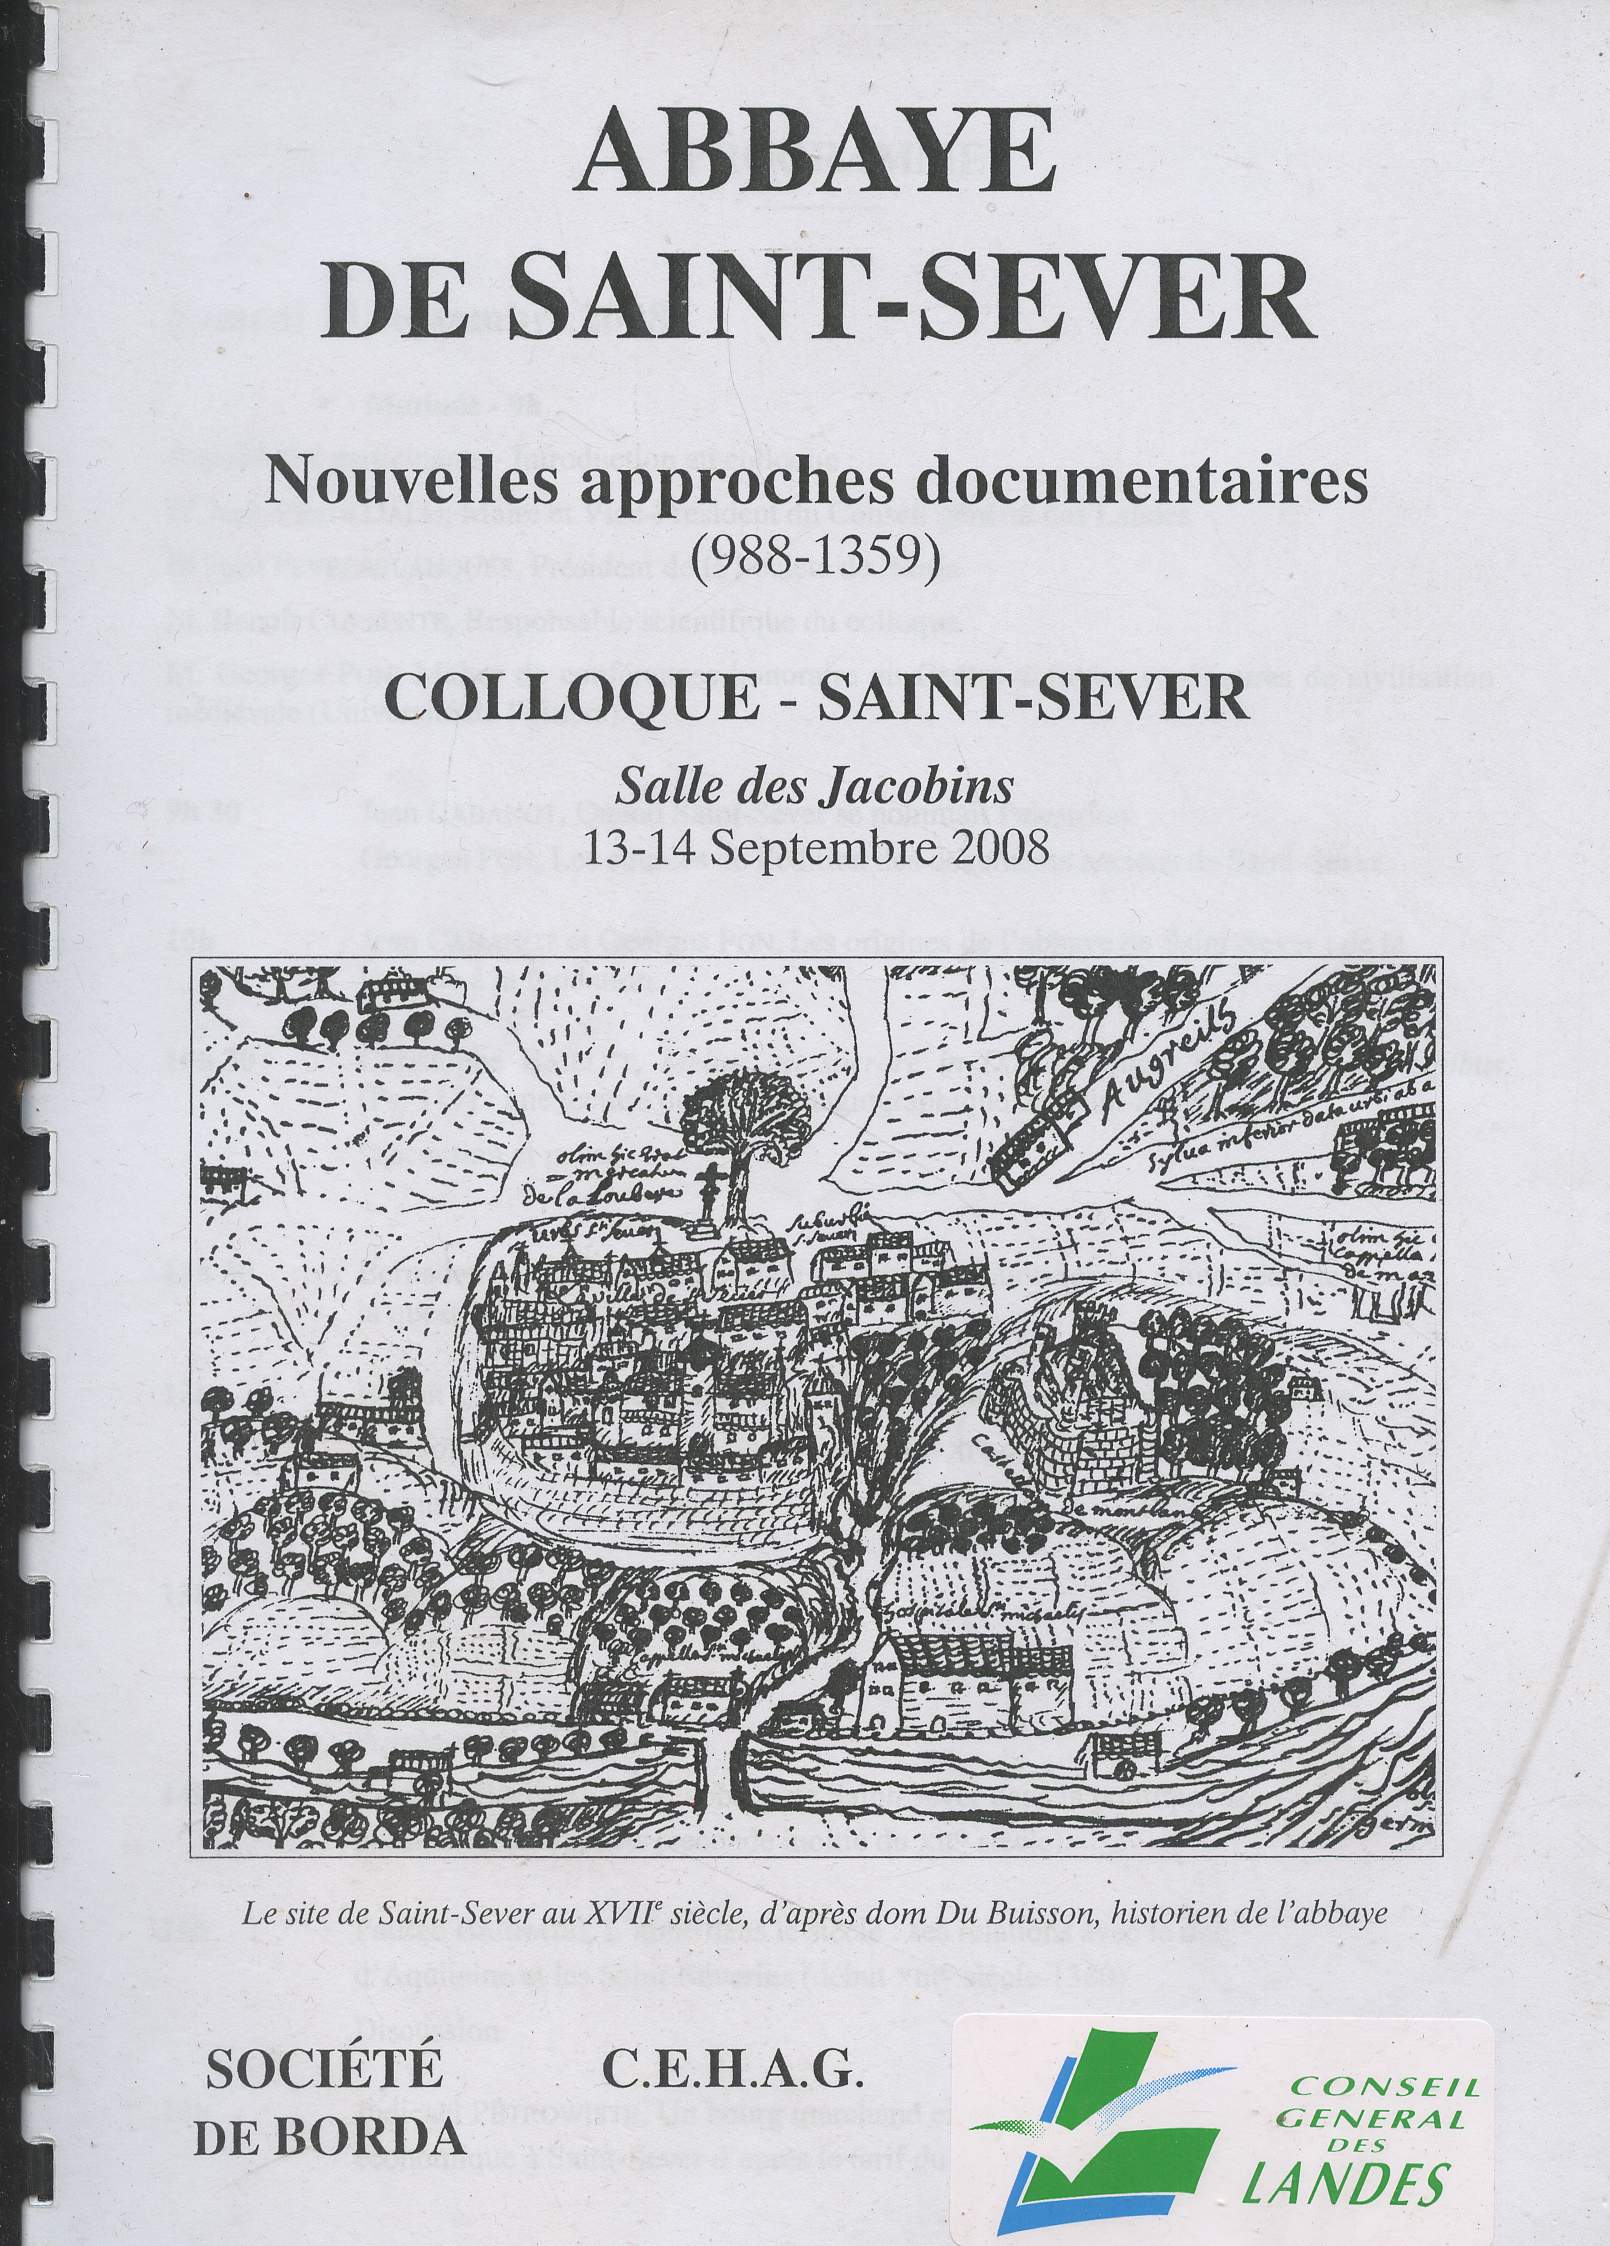 Abbaye de Saint-Sever, nouvelles approches documentaires (988-1359) - Colloque - Saint-Sever salle des Jacobins 13-14 septembre 2008